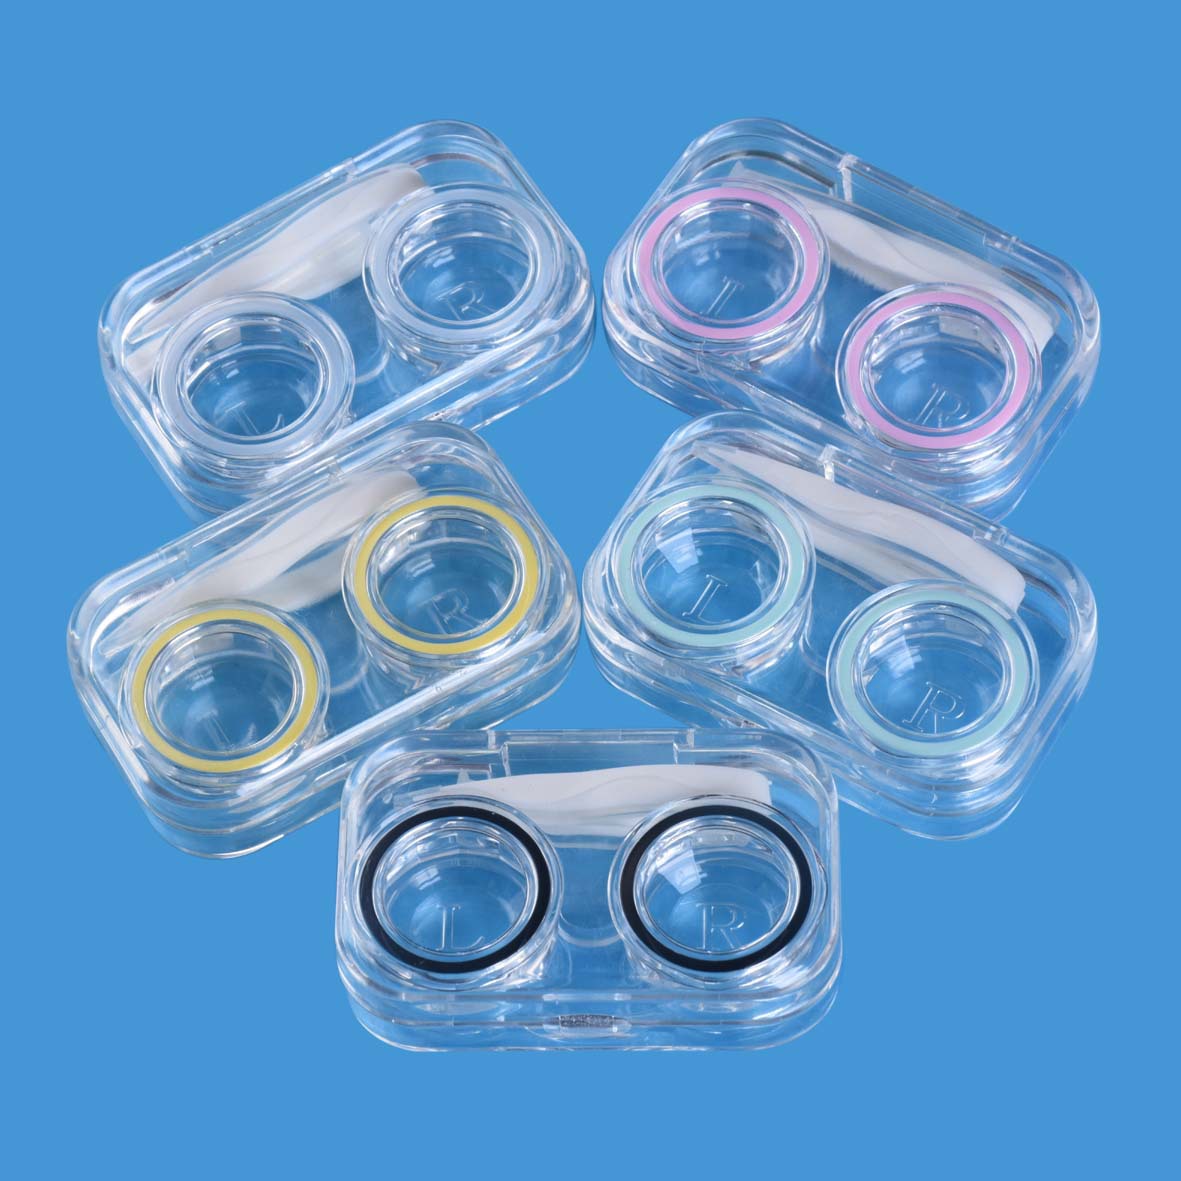 WL09无拧盖隐形彩色美瞳伴侣护理盒 透明翻盖 便携收纳隐形眼镜盒